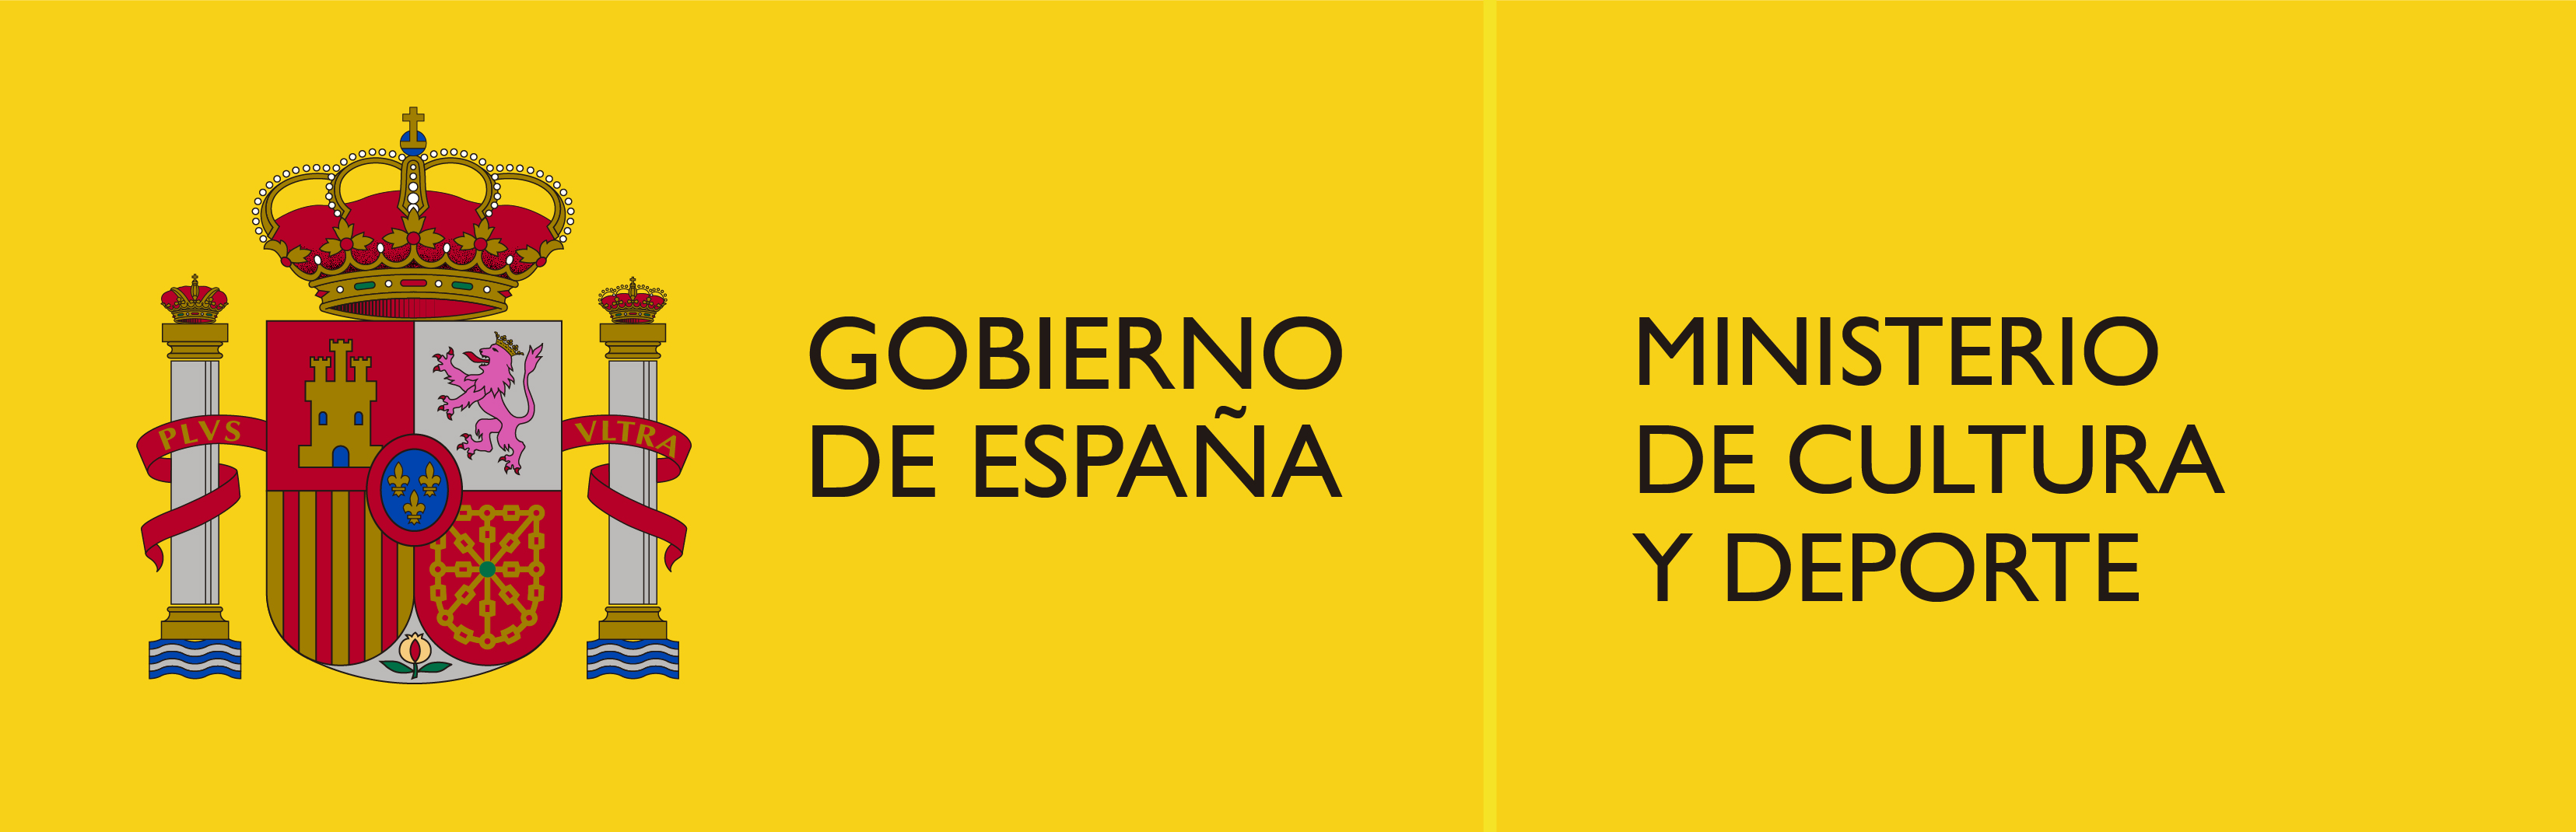 logo Gobierno Espana